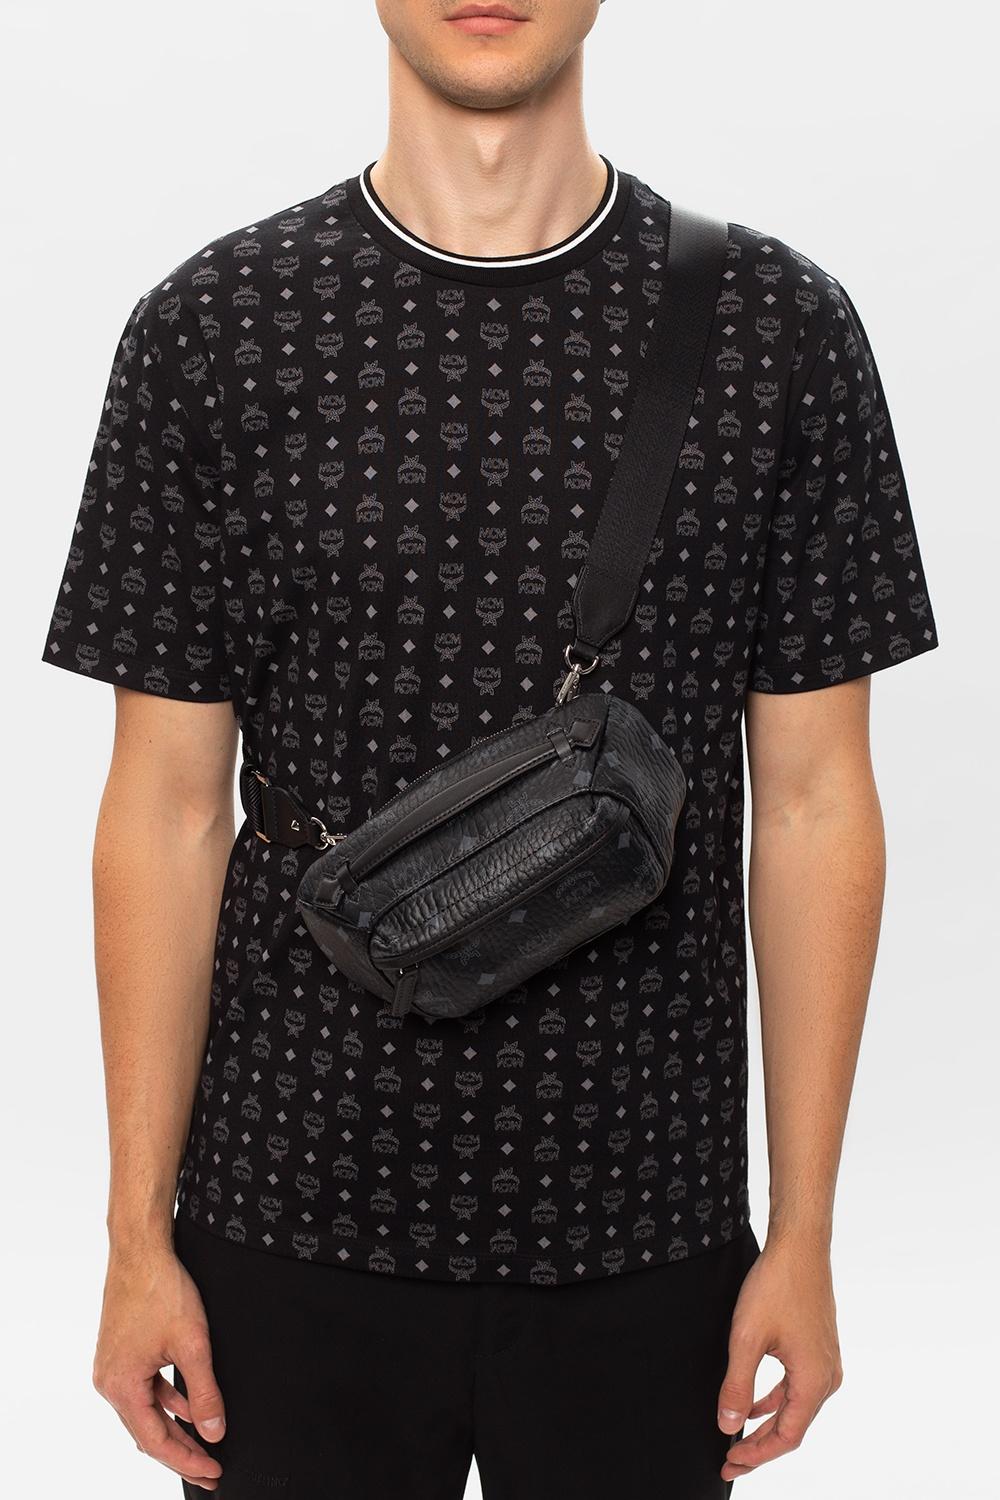 MCM Canvas Shoulder Bag With Logo Black for Men - Lyst